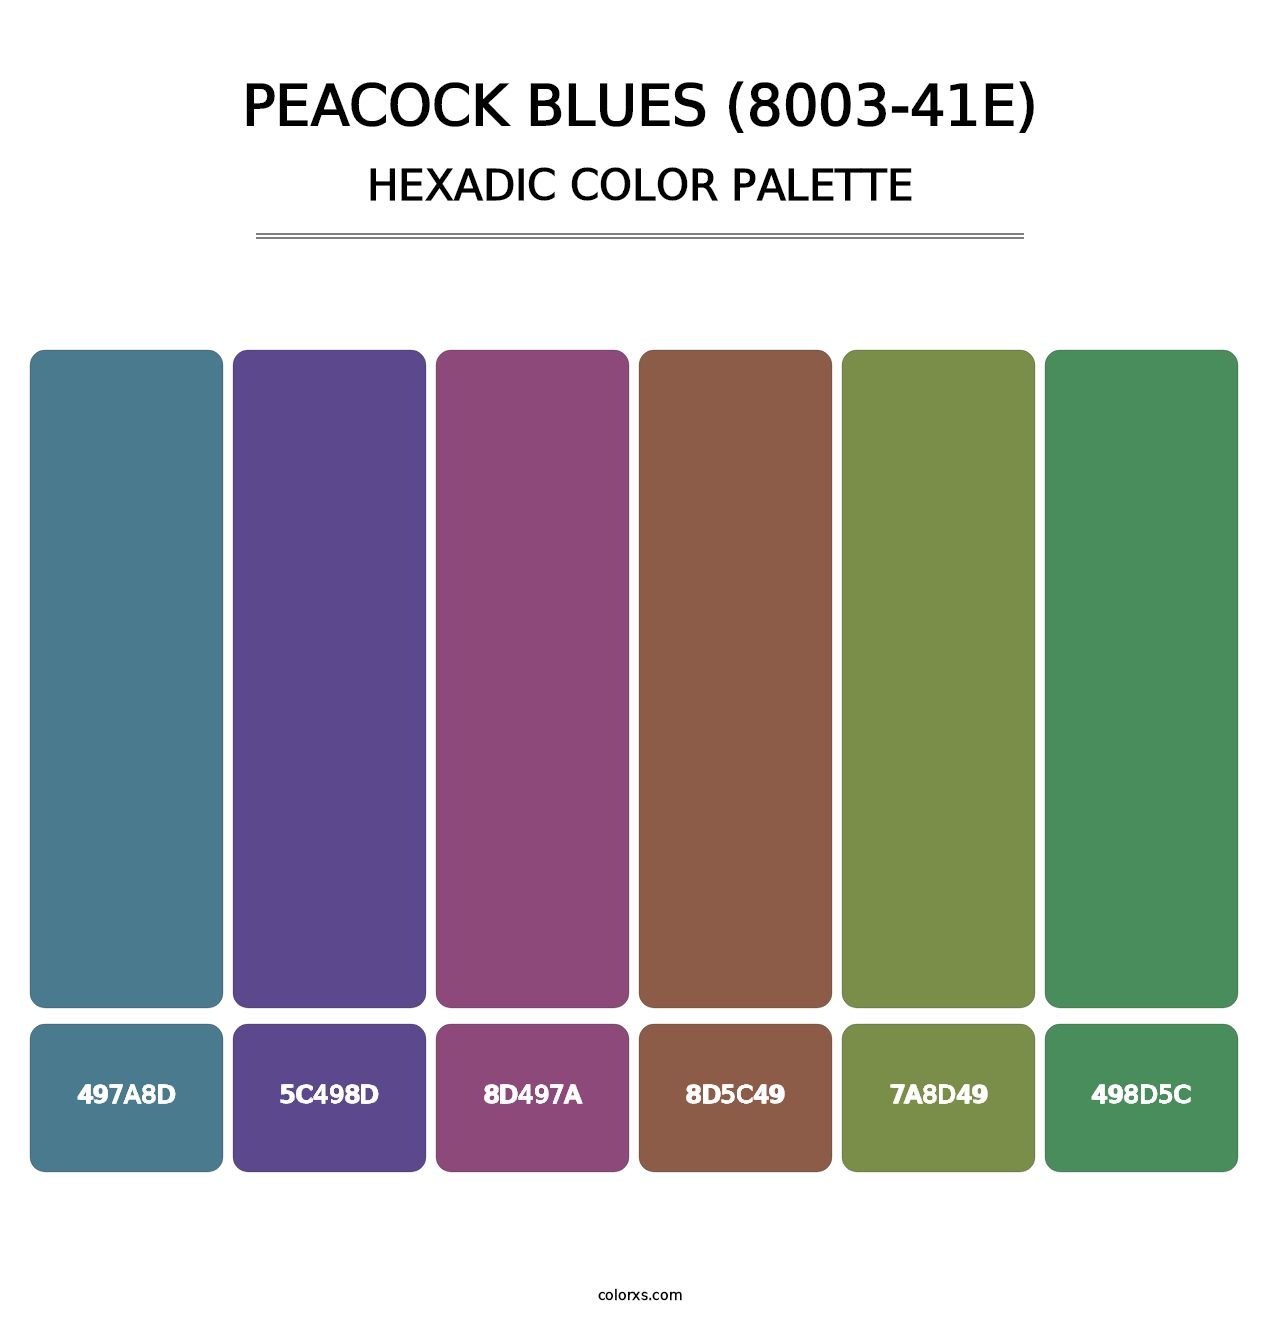 Peacock Blues (8003-41E) - Hexadic Color Palette